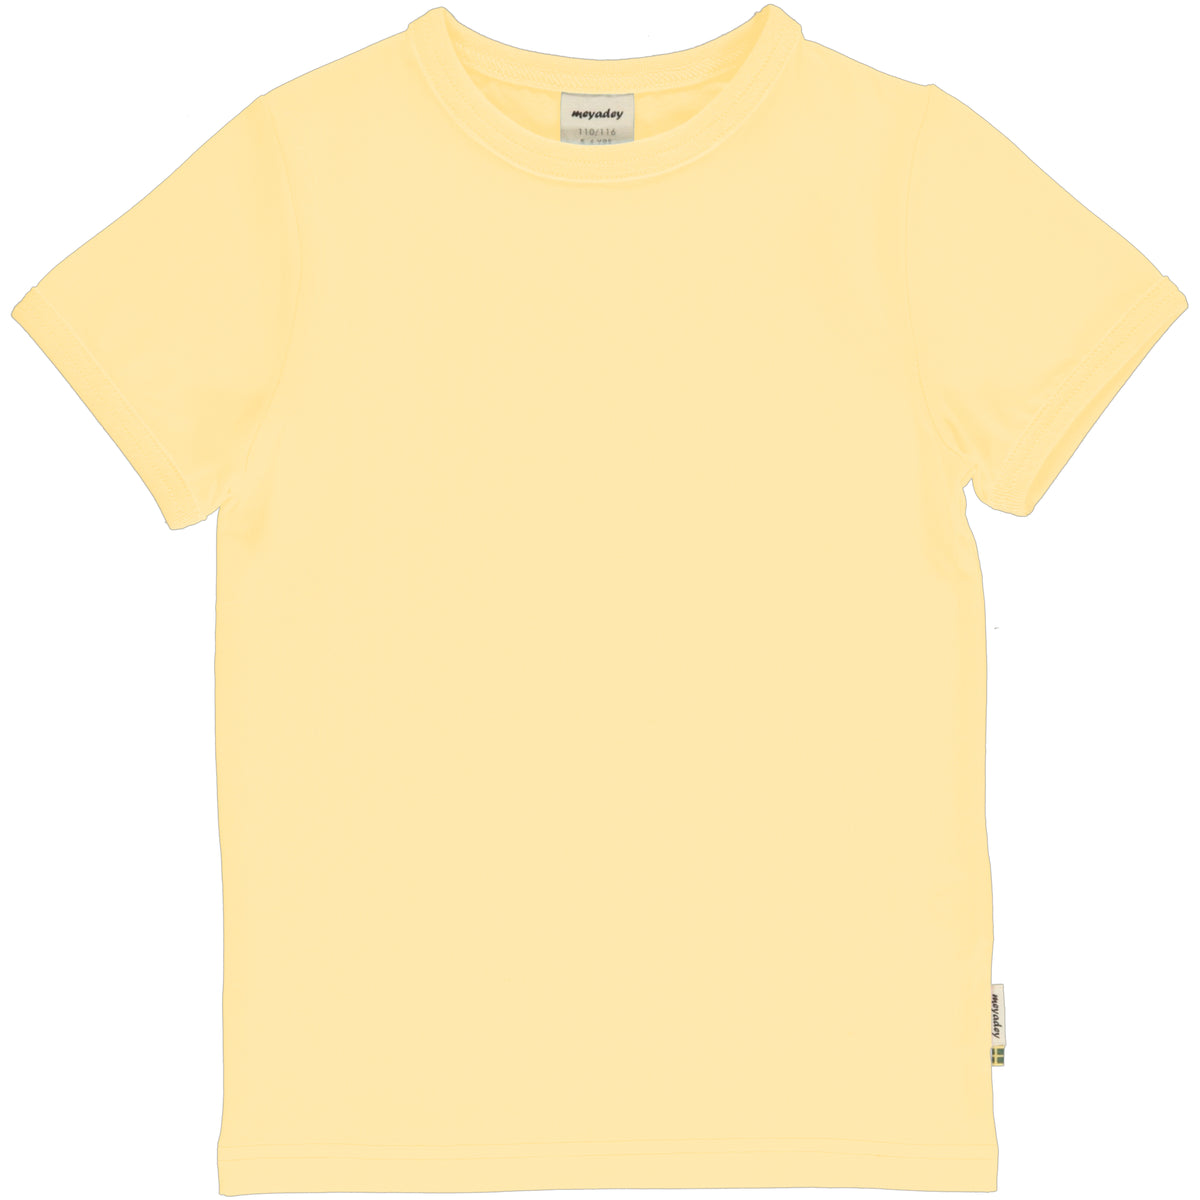 Meyadey - Top SS Solid Yellow Soft T-Shirt Zacht Geel